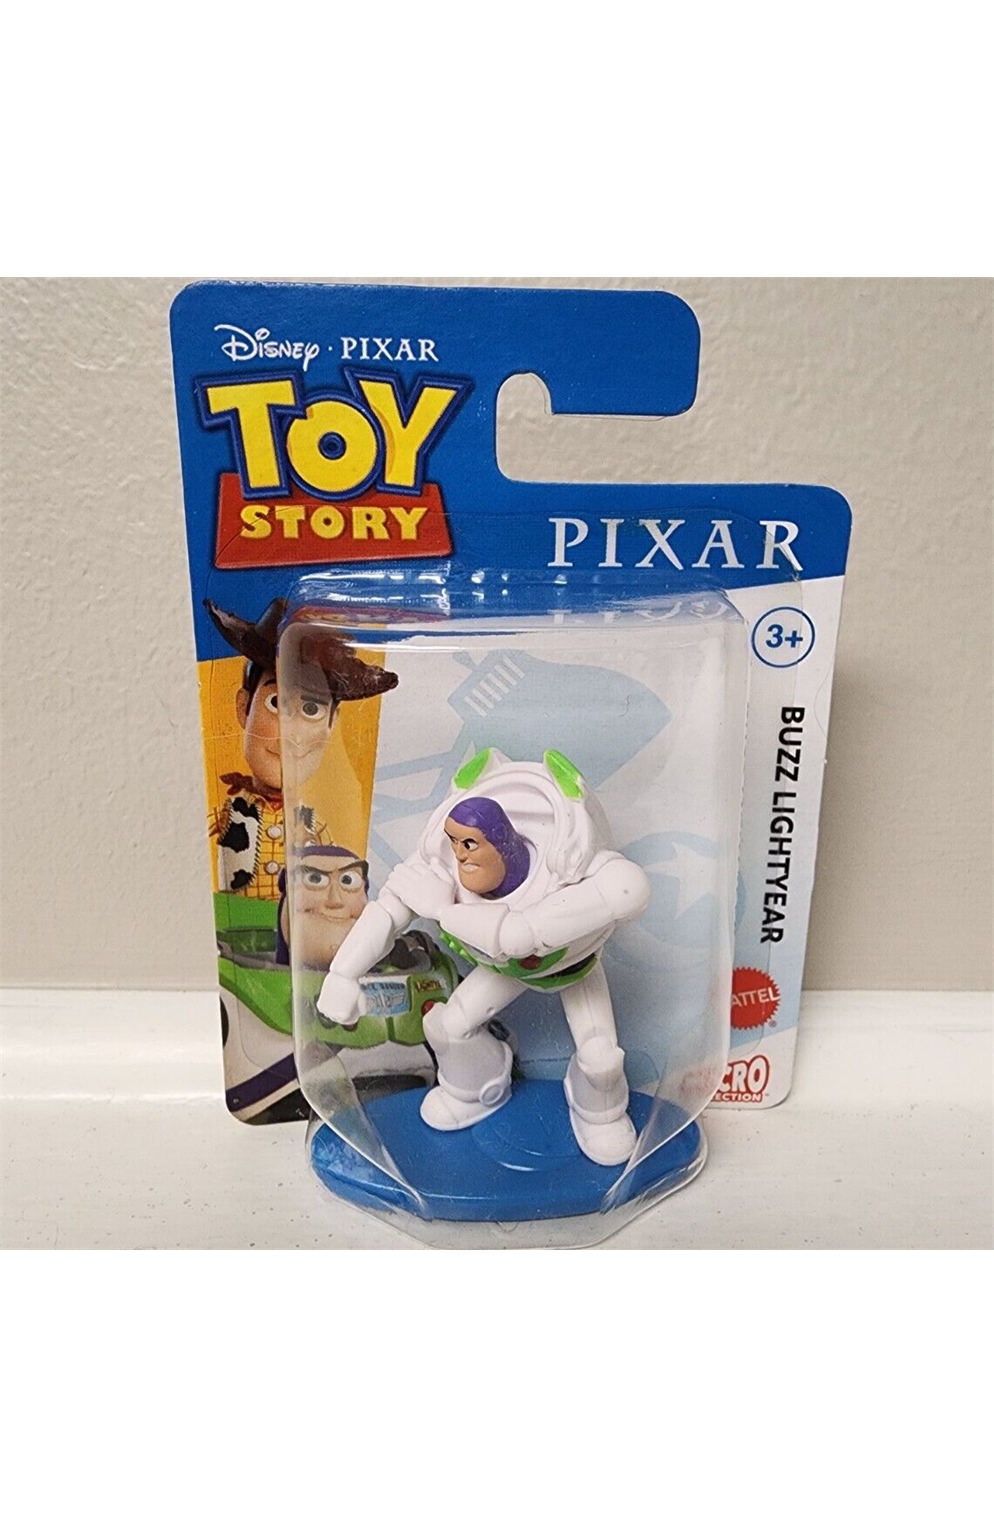 Disney Pixar Toy Story Buzz Lightyear Mini Figure 2"